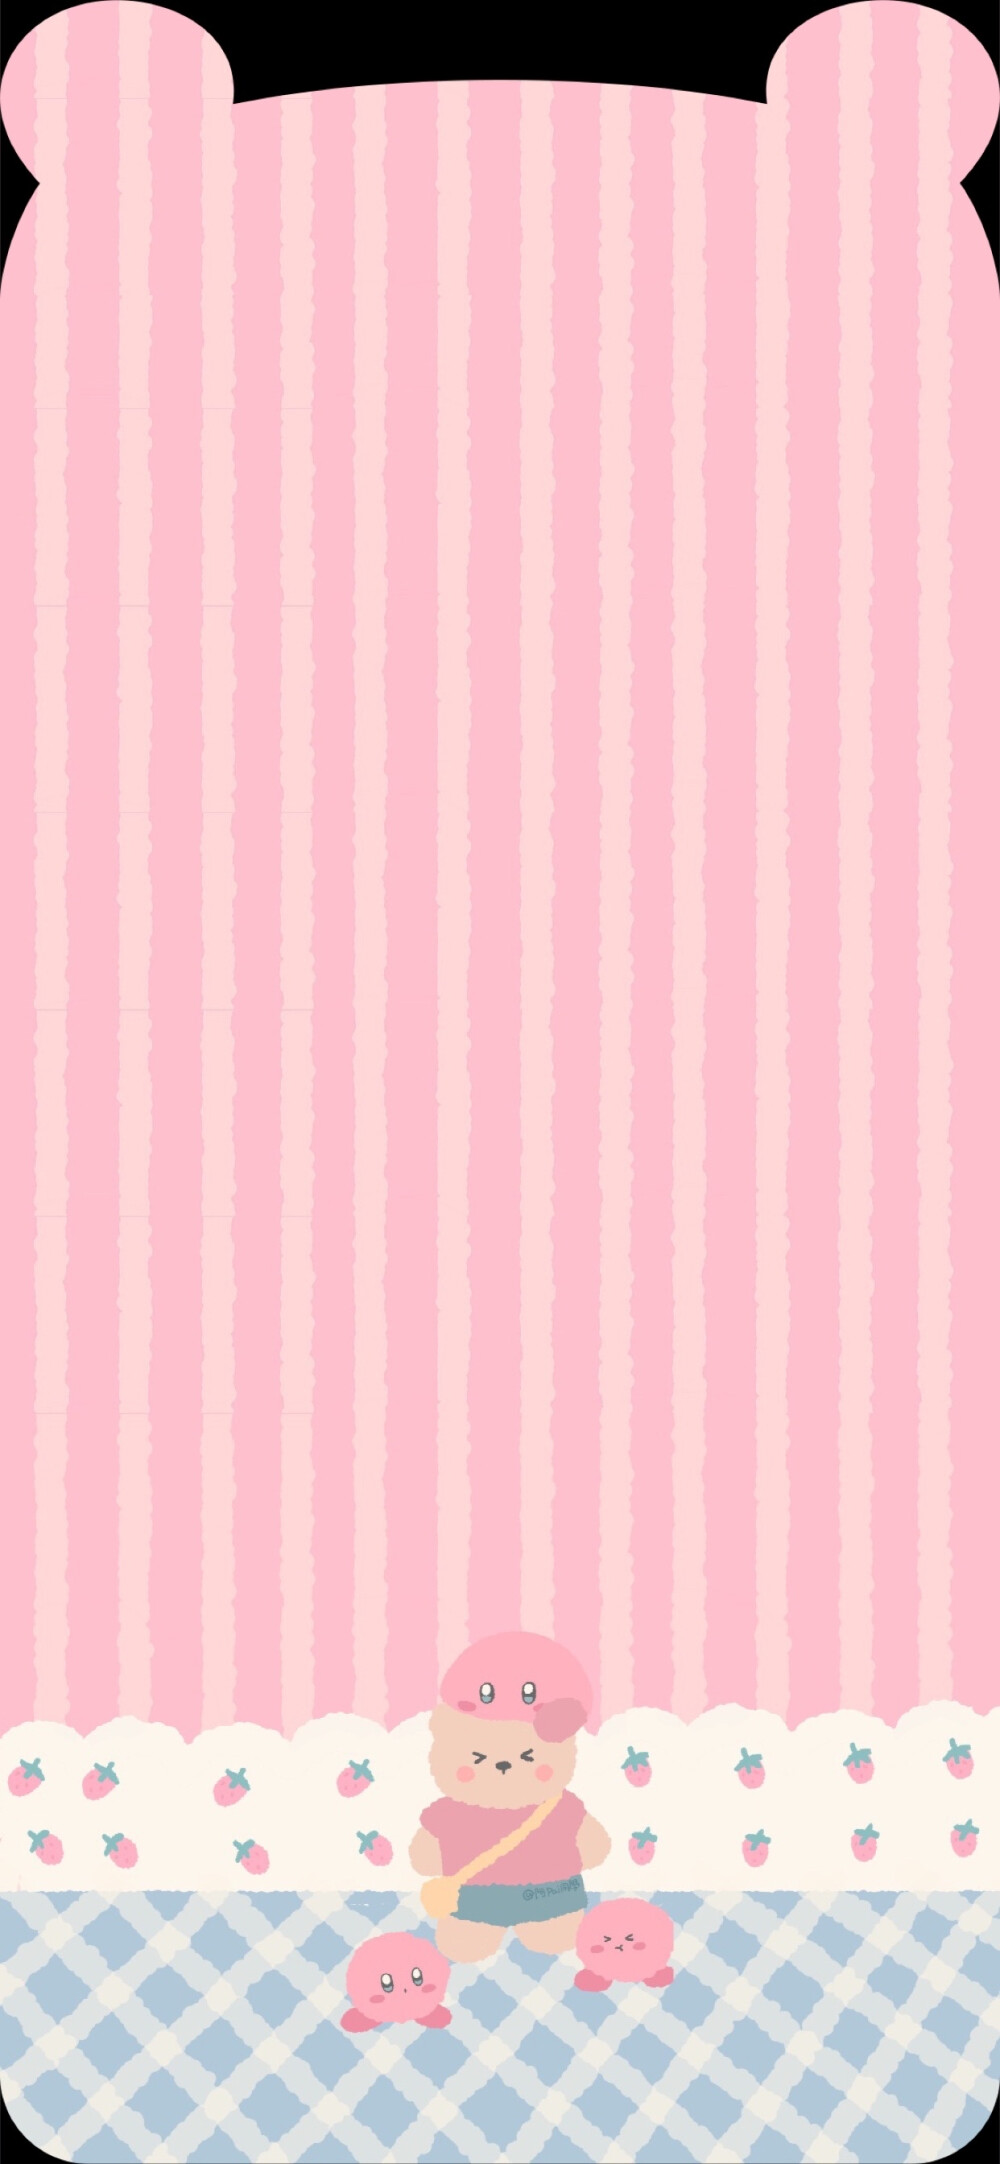 耳朵壁纸 网红 粉色图片